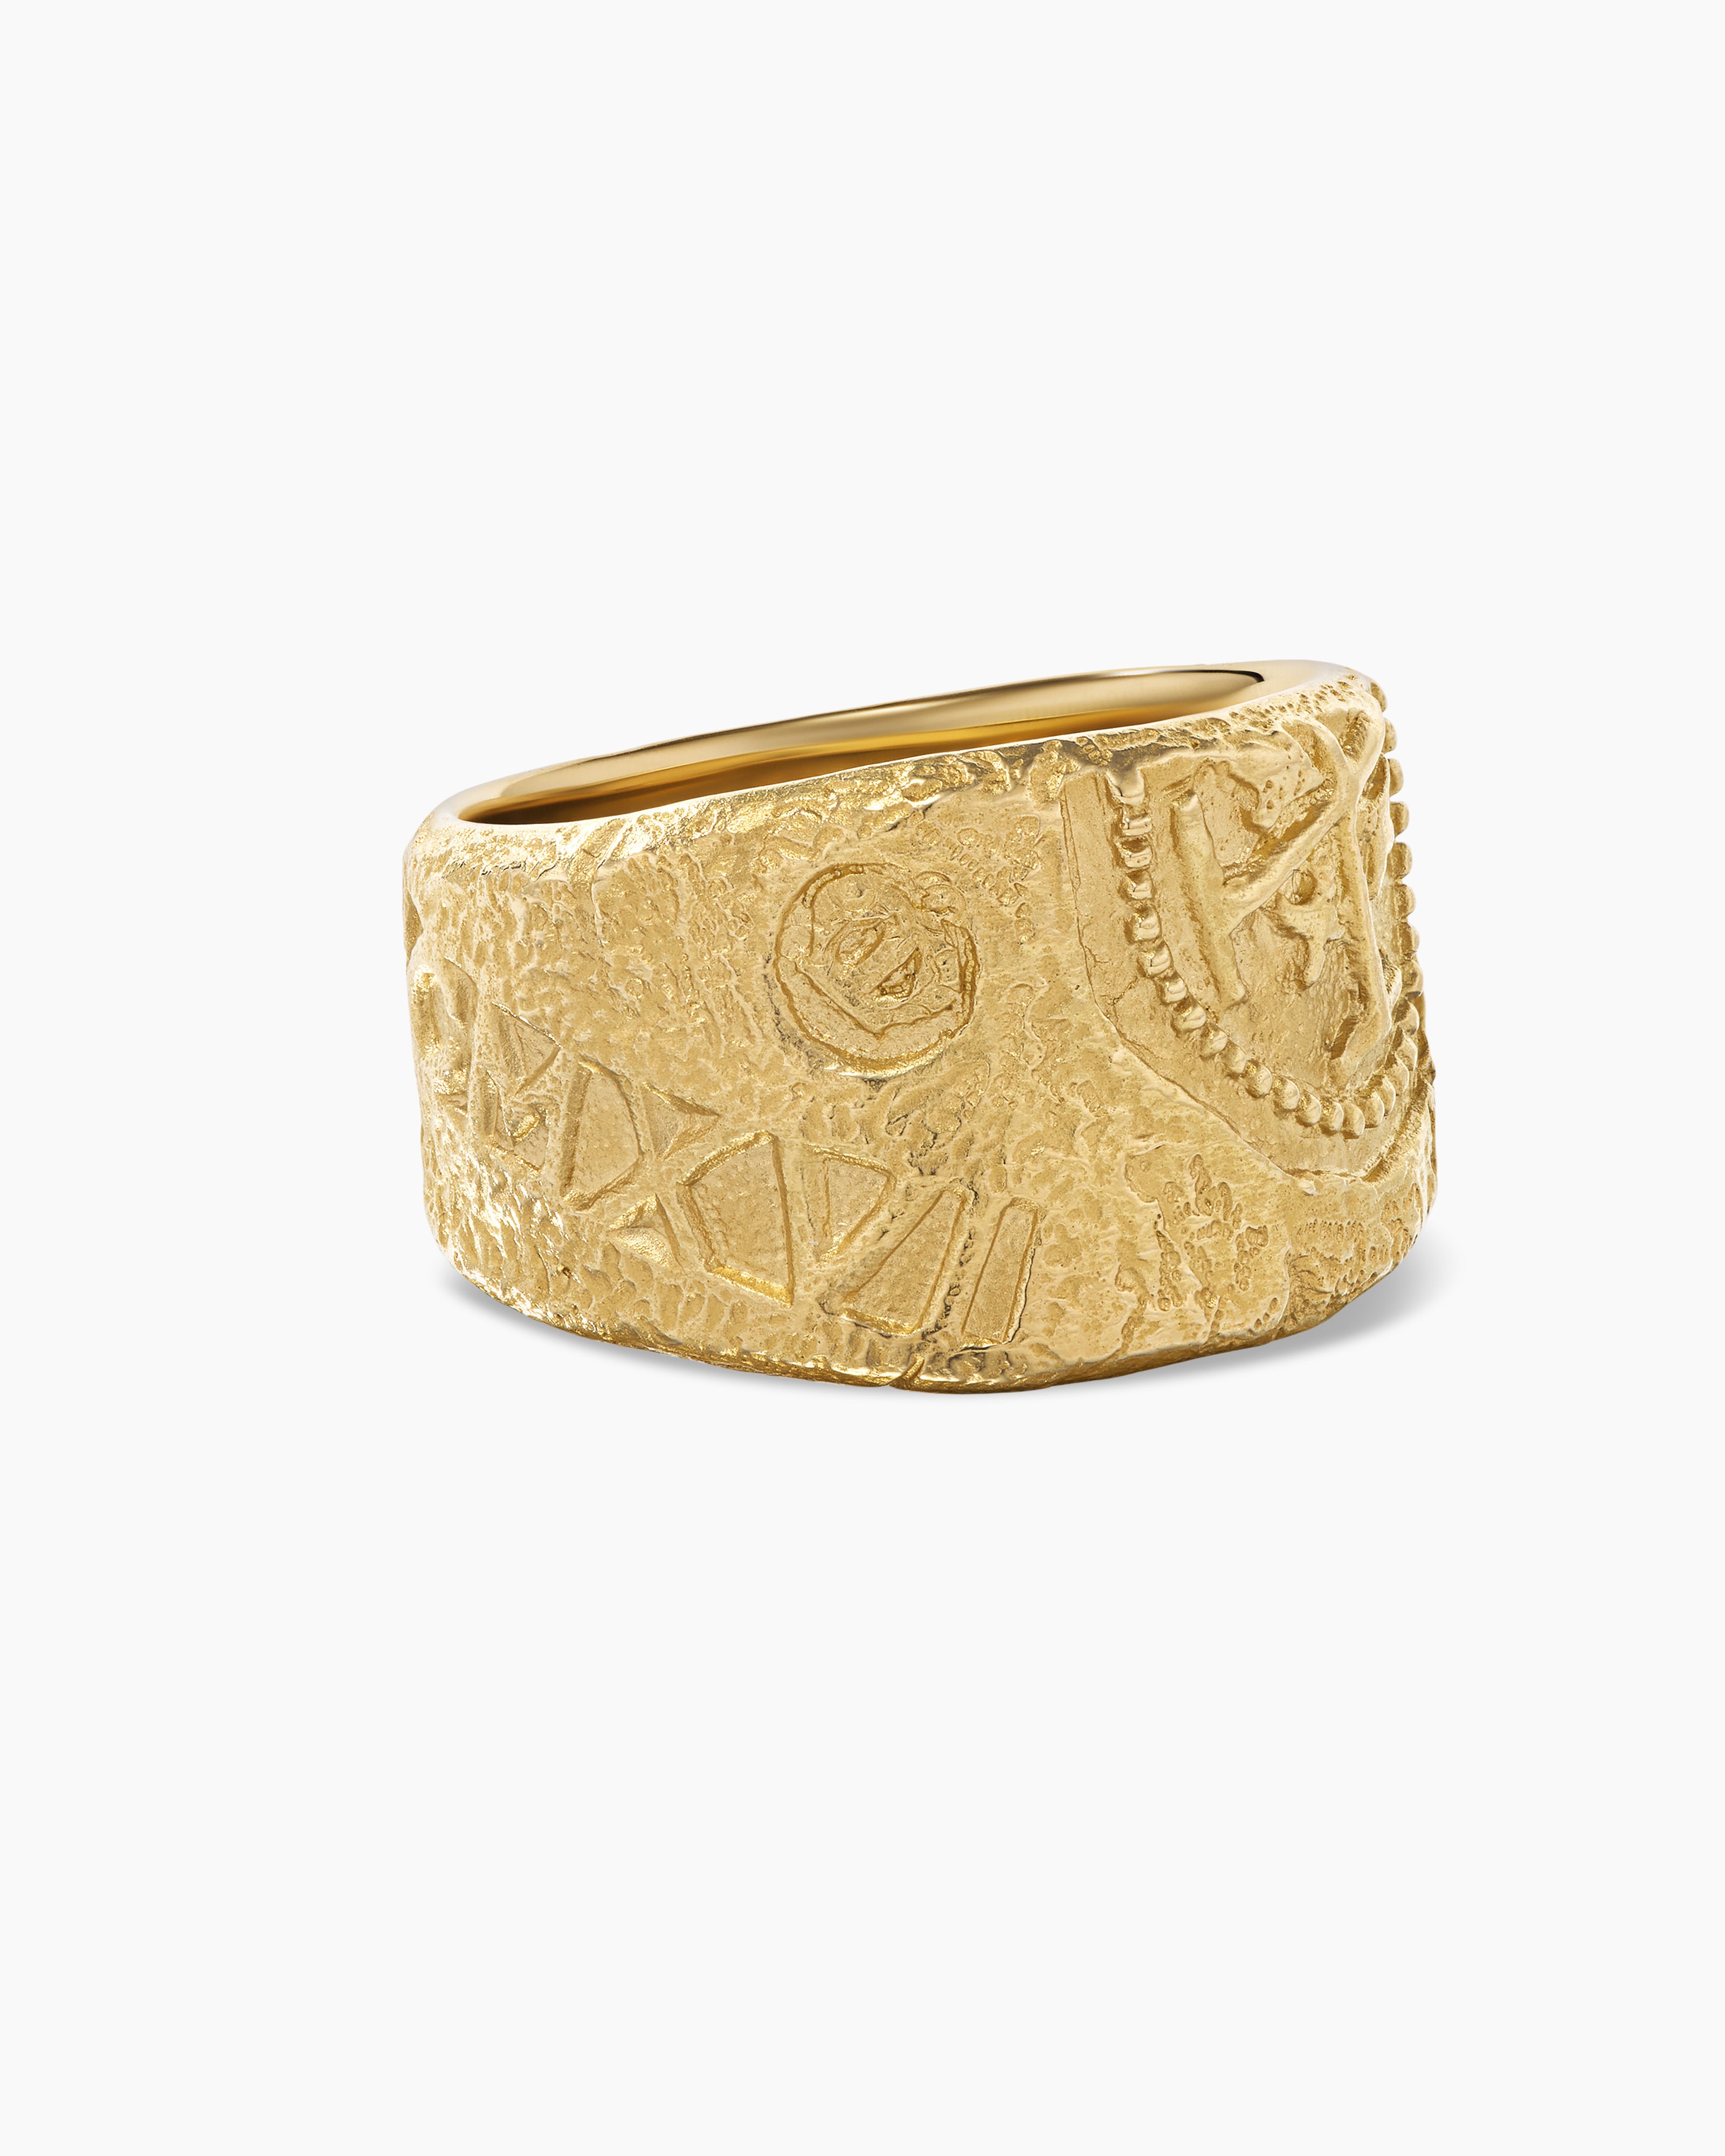 Shipwreck Cigar Band Ring in 18K Yellow Gold, 15mm | David Yurman EU